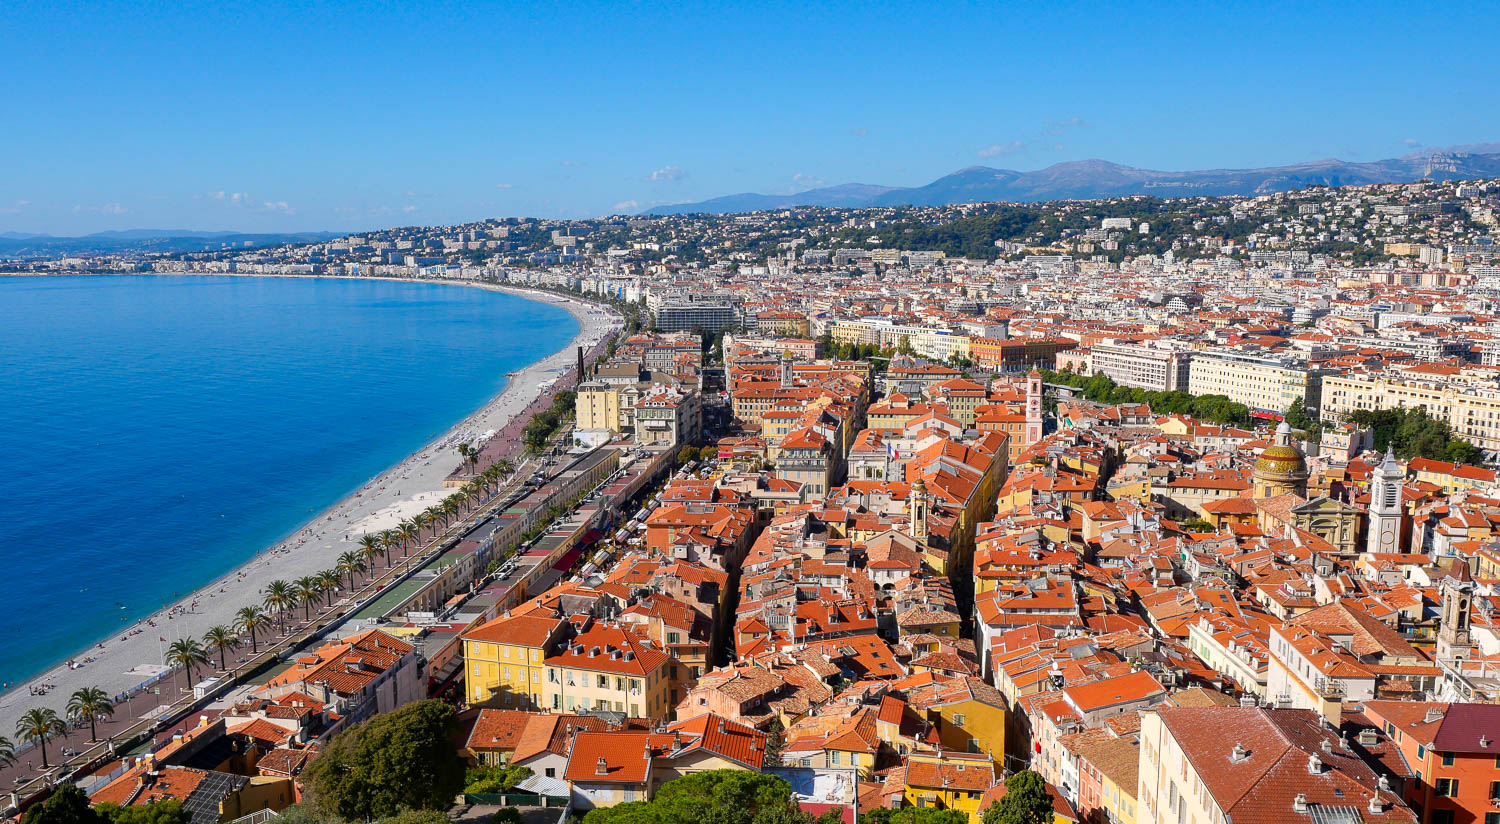 Panorama of the city of Nice - 2 Days Nice itinerary - Nice things to do